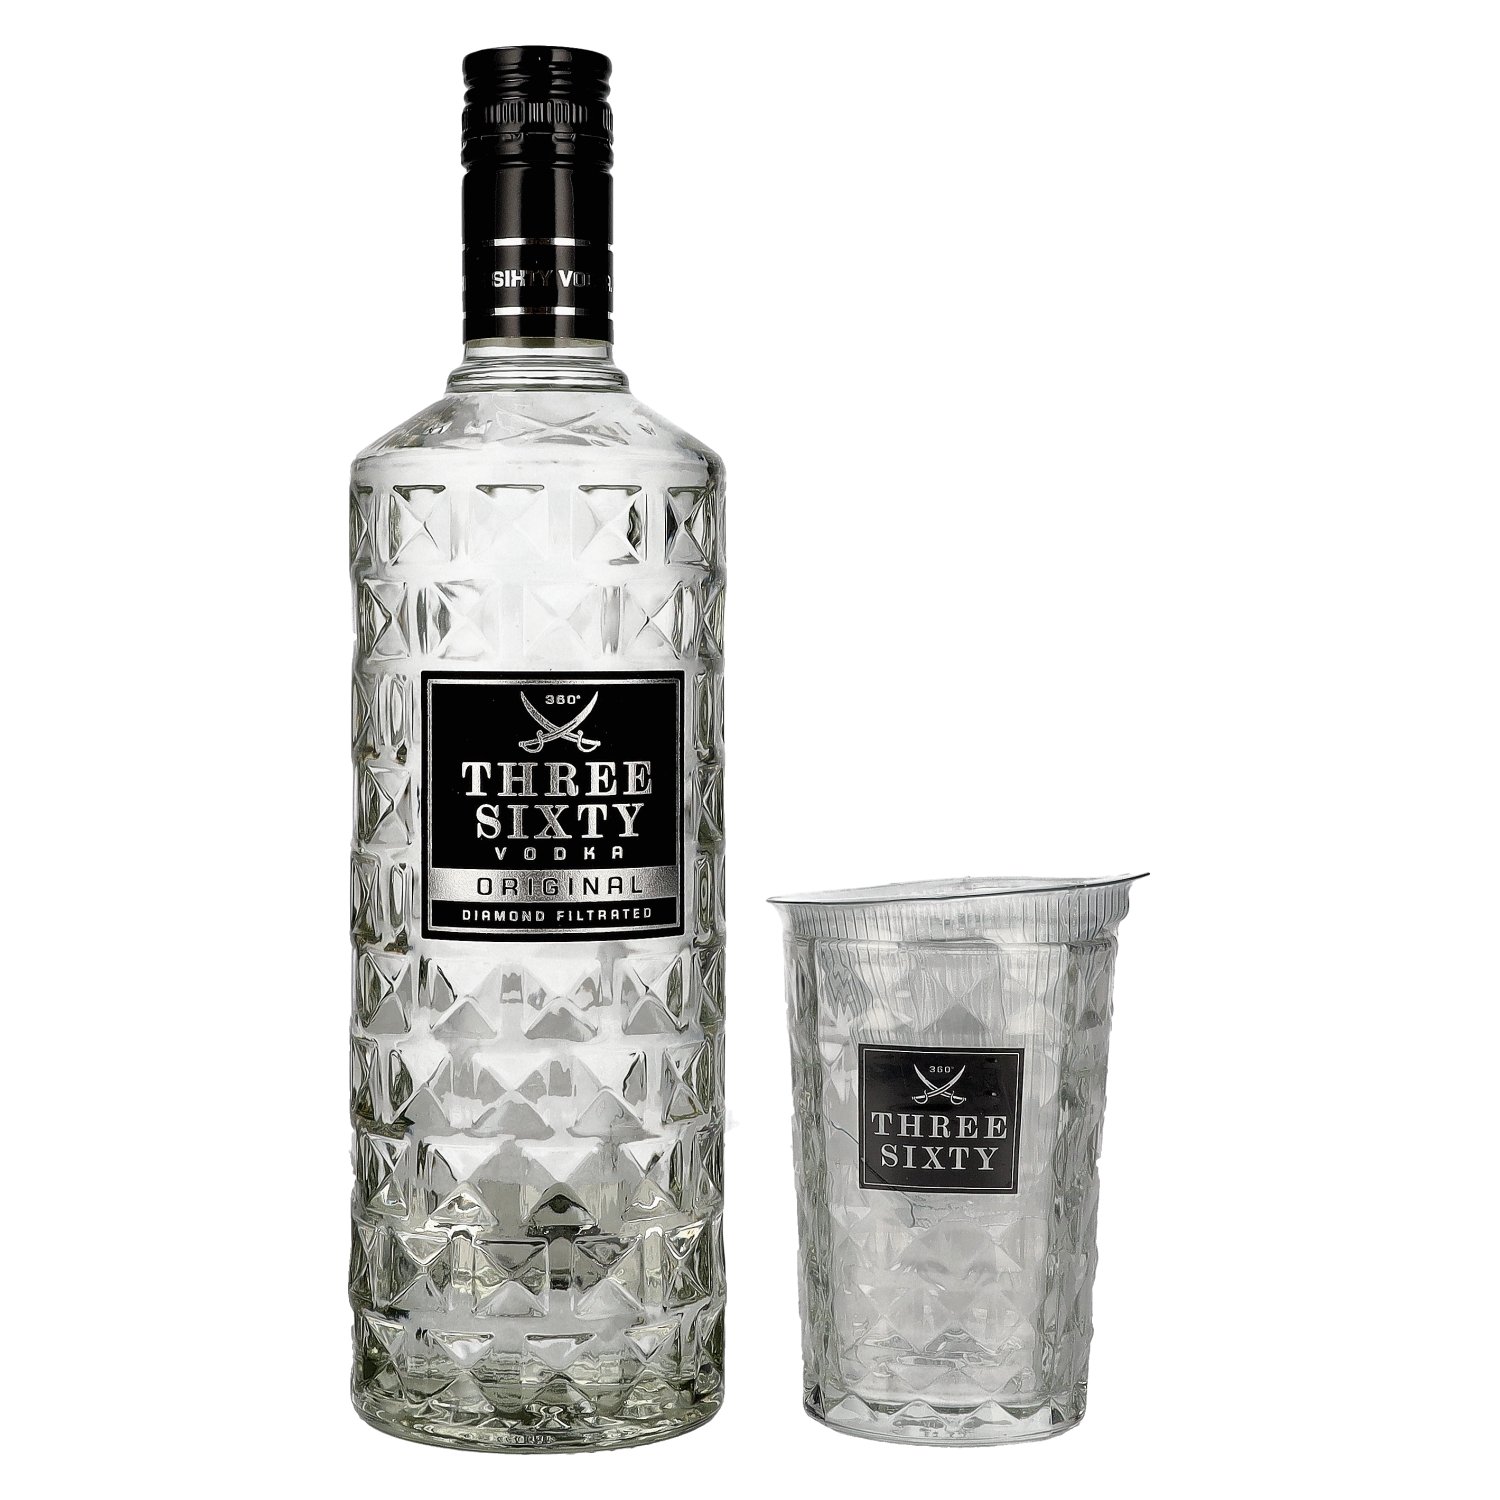 Three 37,5% glass Vodka 0,7l with Vol. Sixty